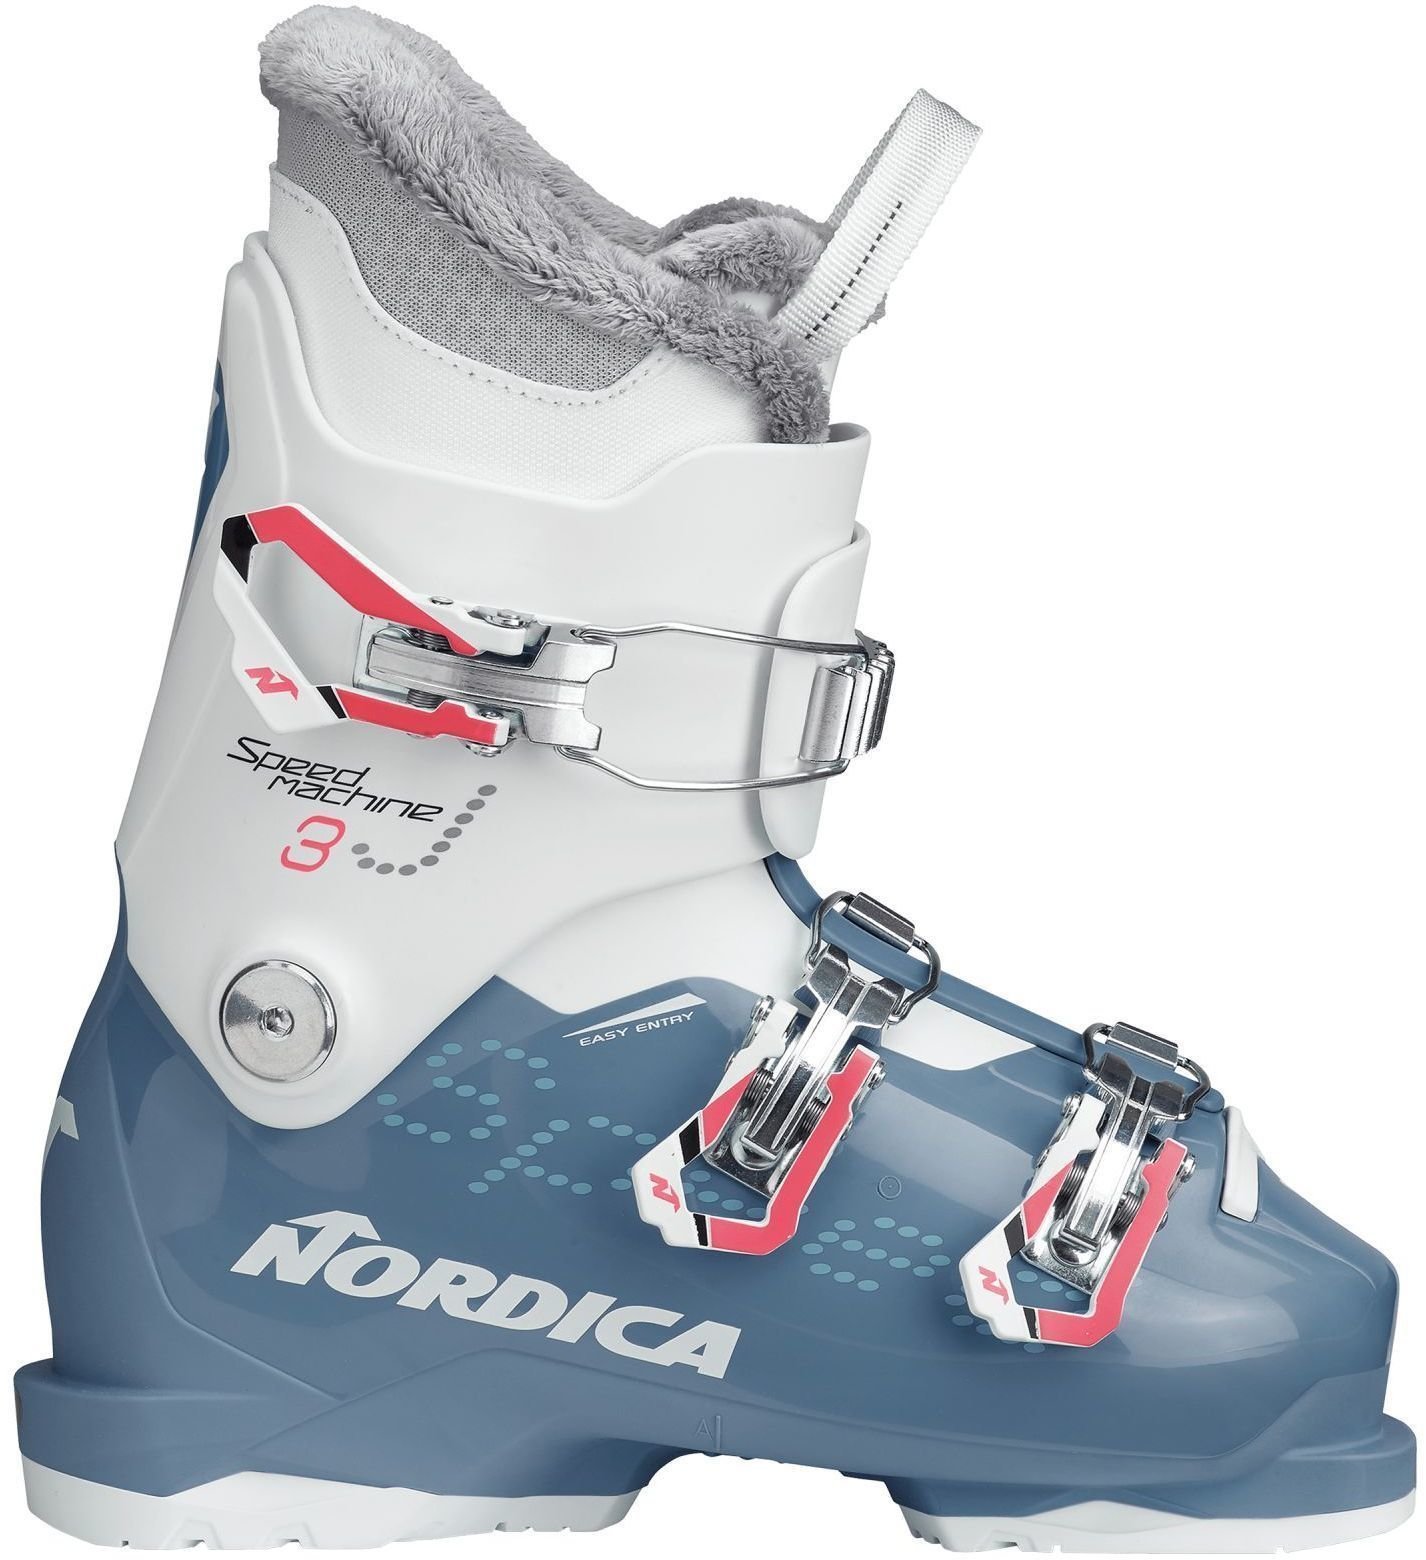 Alpin-Skischuhe Nordica Speedmachine J3 Light Blue/White 235 Alpin-Skischuhe